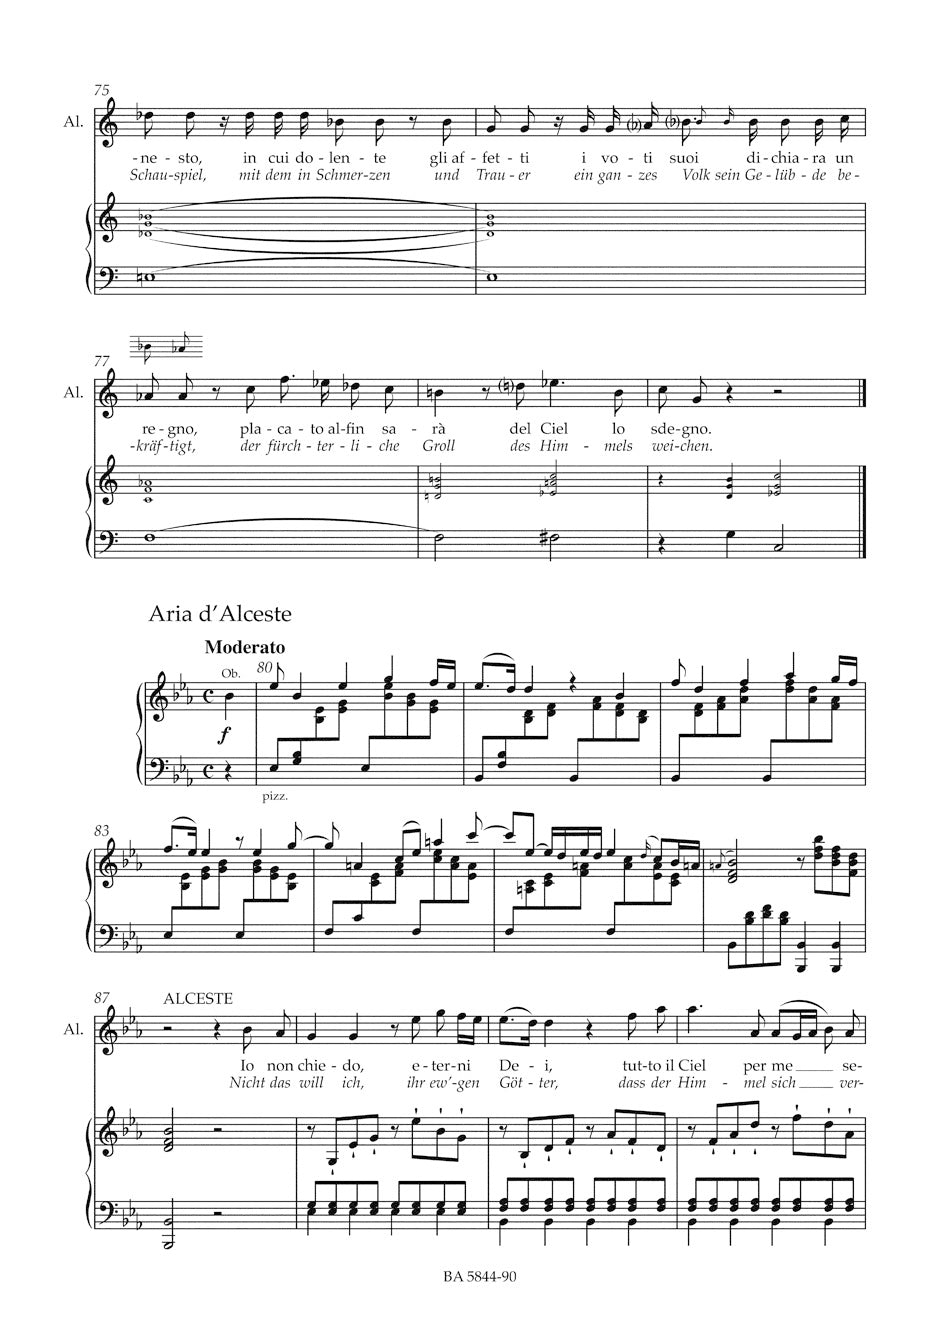 Gluck Alceste -Tragedia per musica in three acts- (Vienna version 1767)